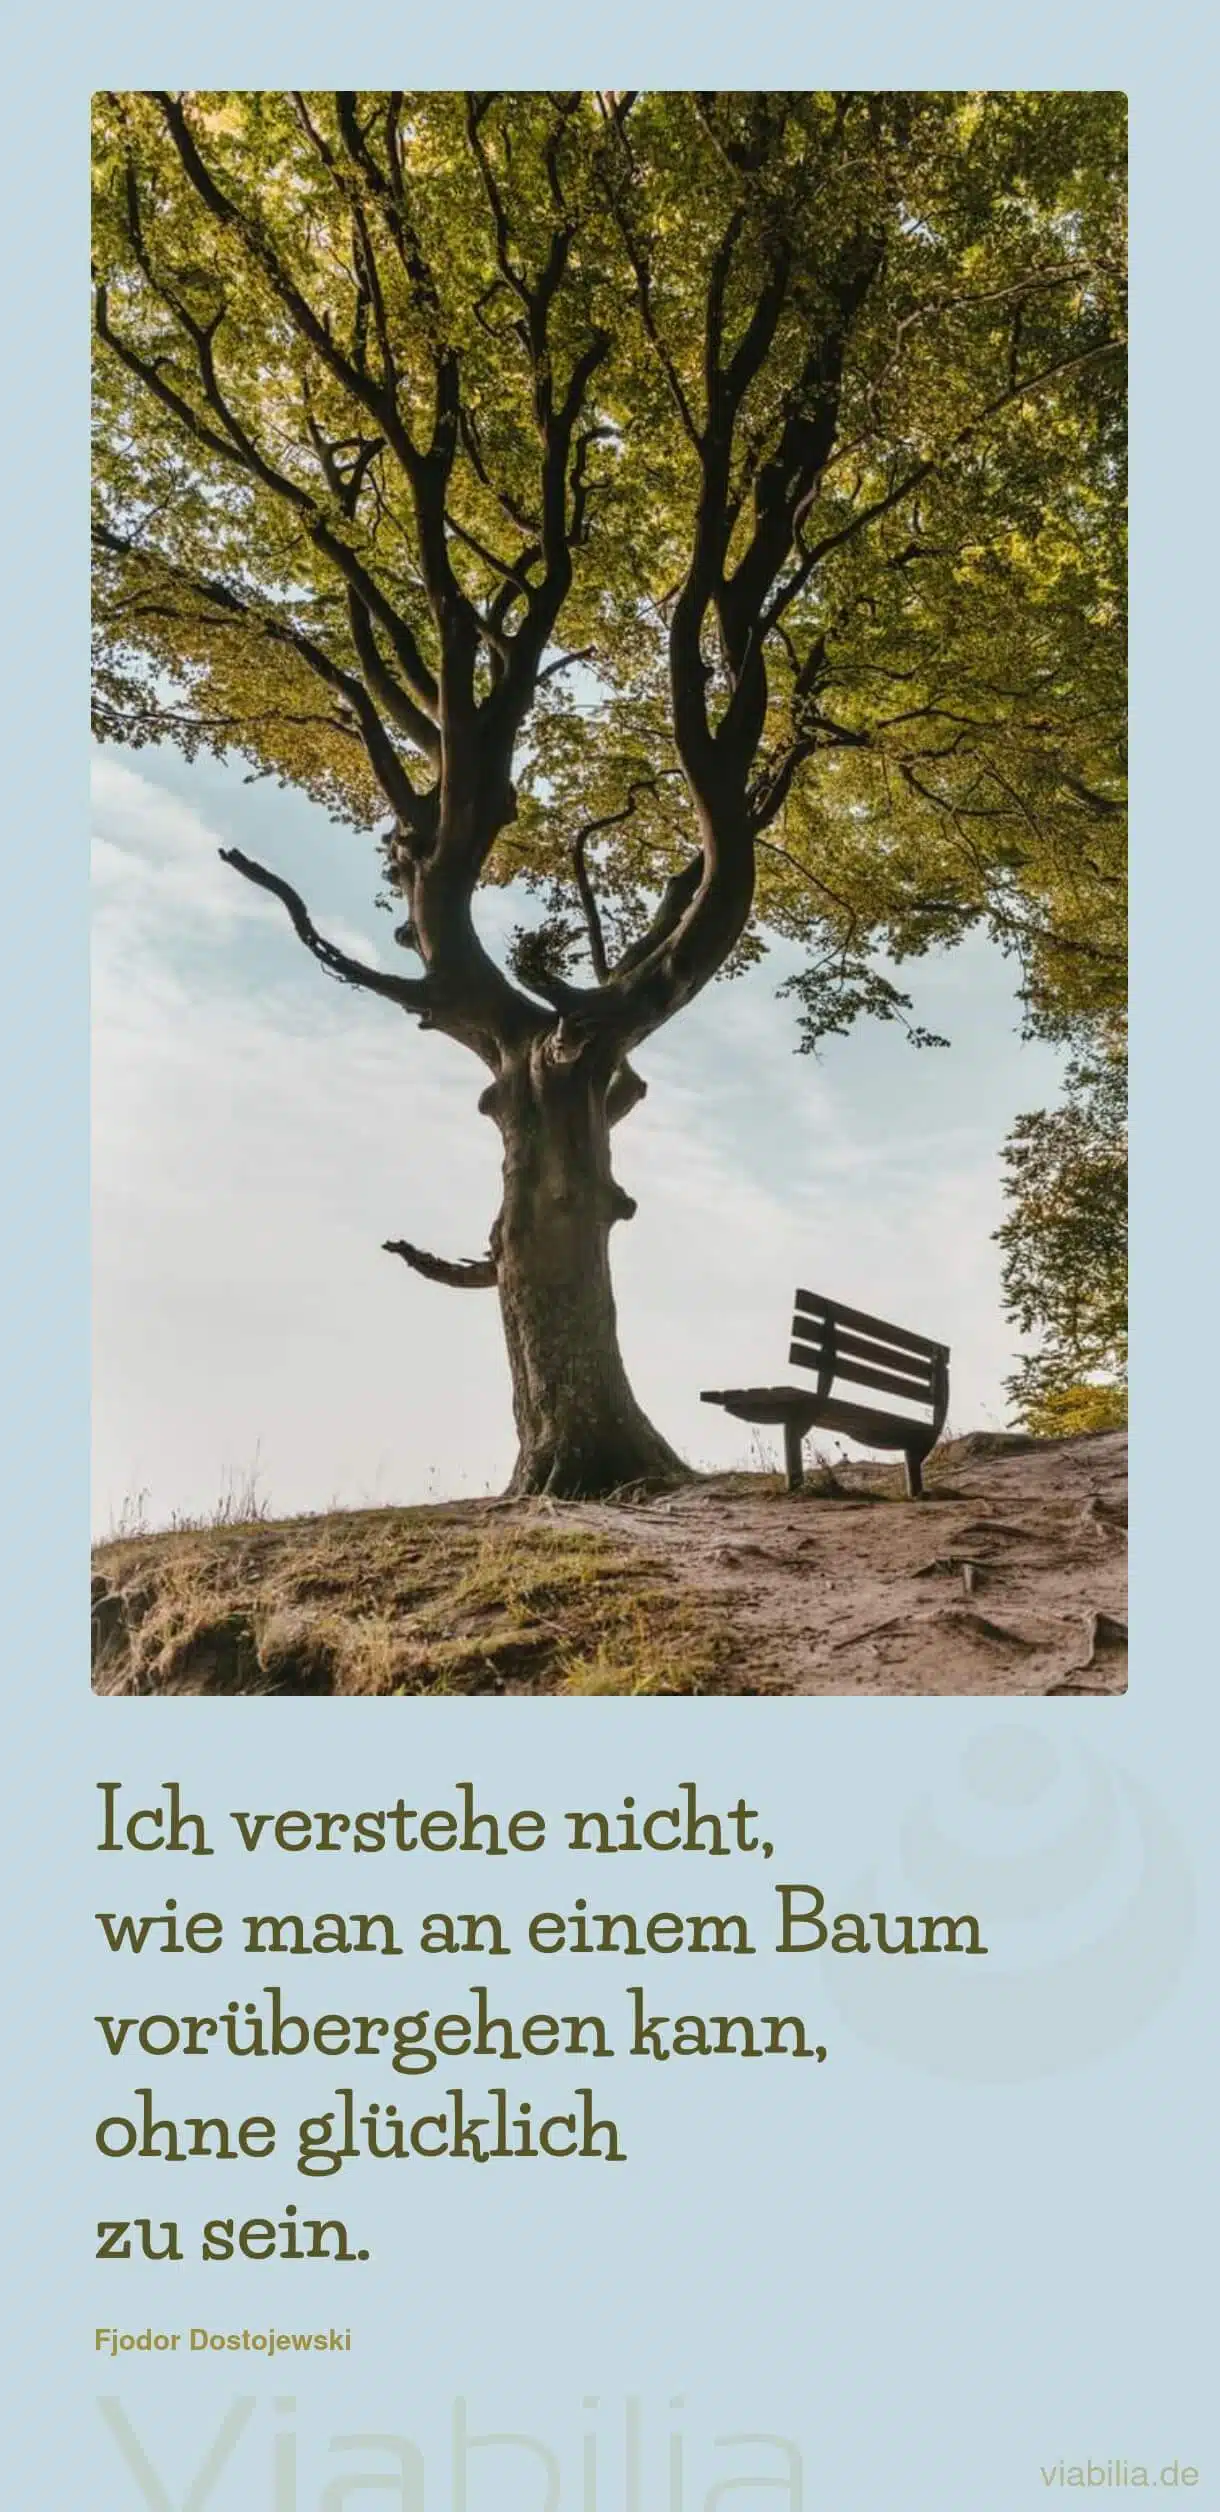 Spruch über Glück und Bäume